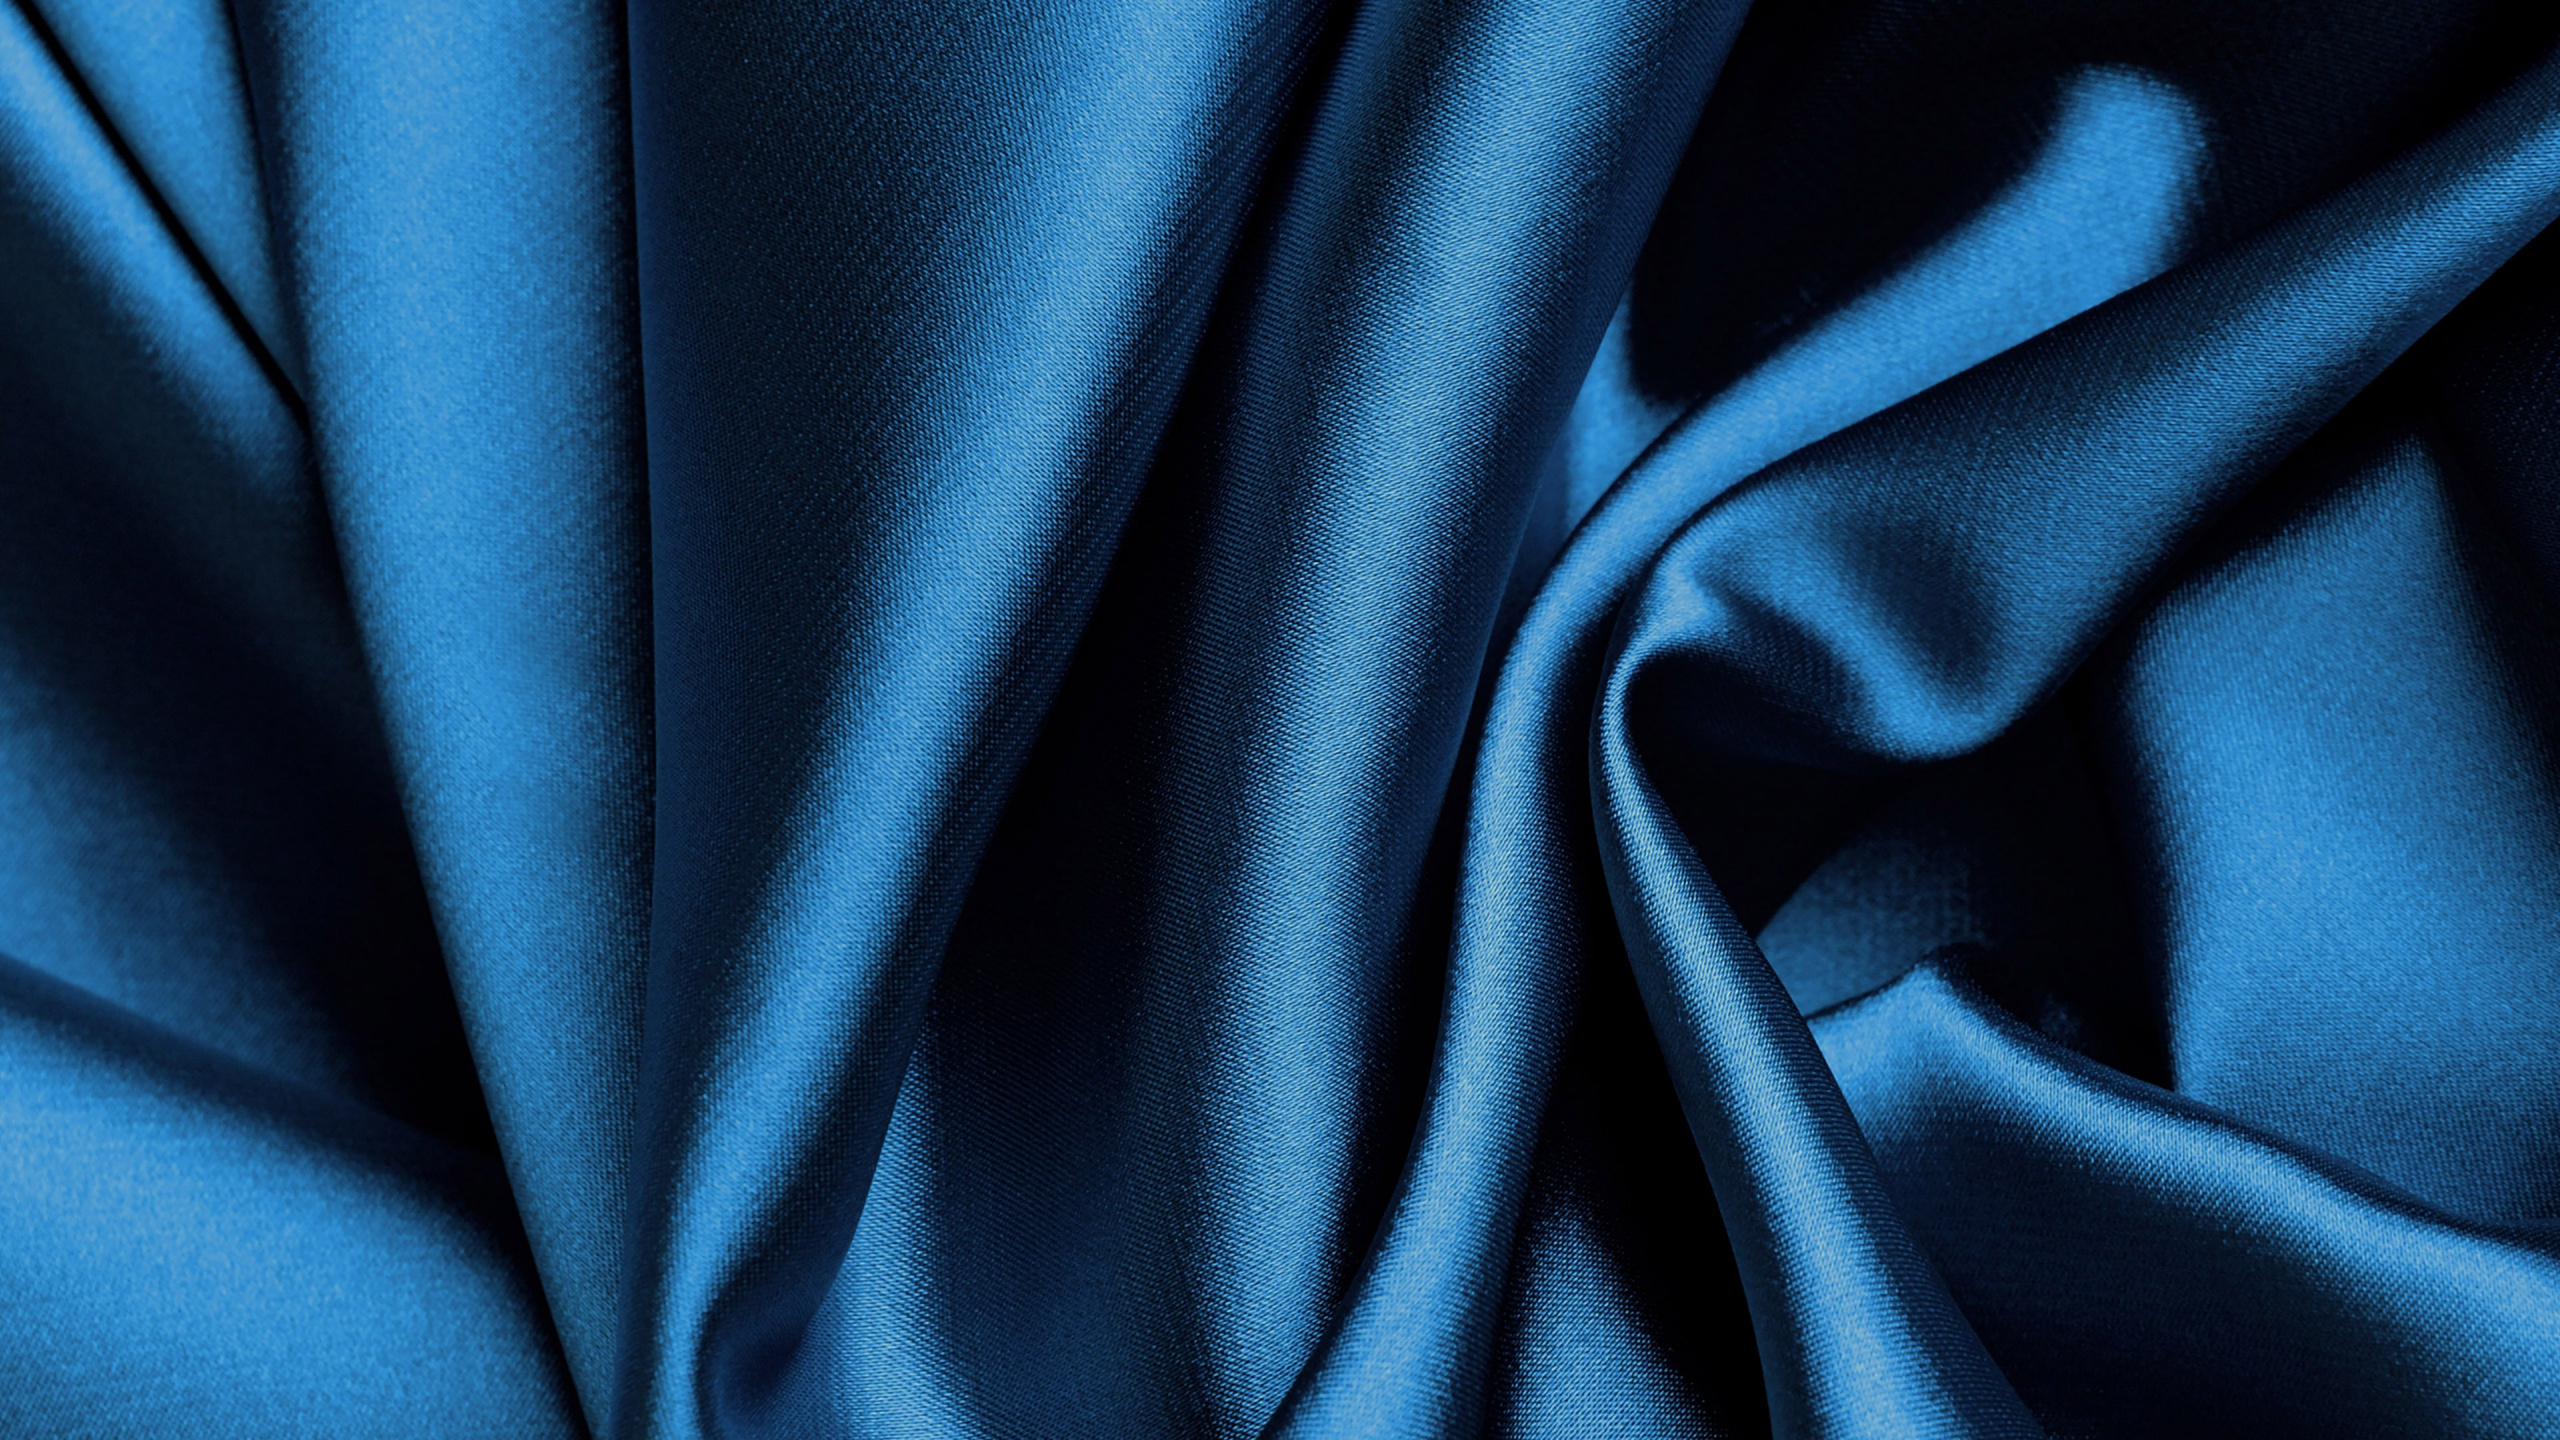 丝绸, 缎面, 黑色的, 电蓝色的, 钴蓝色的 壁纸 2560x1440 允许